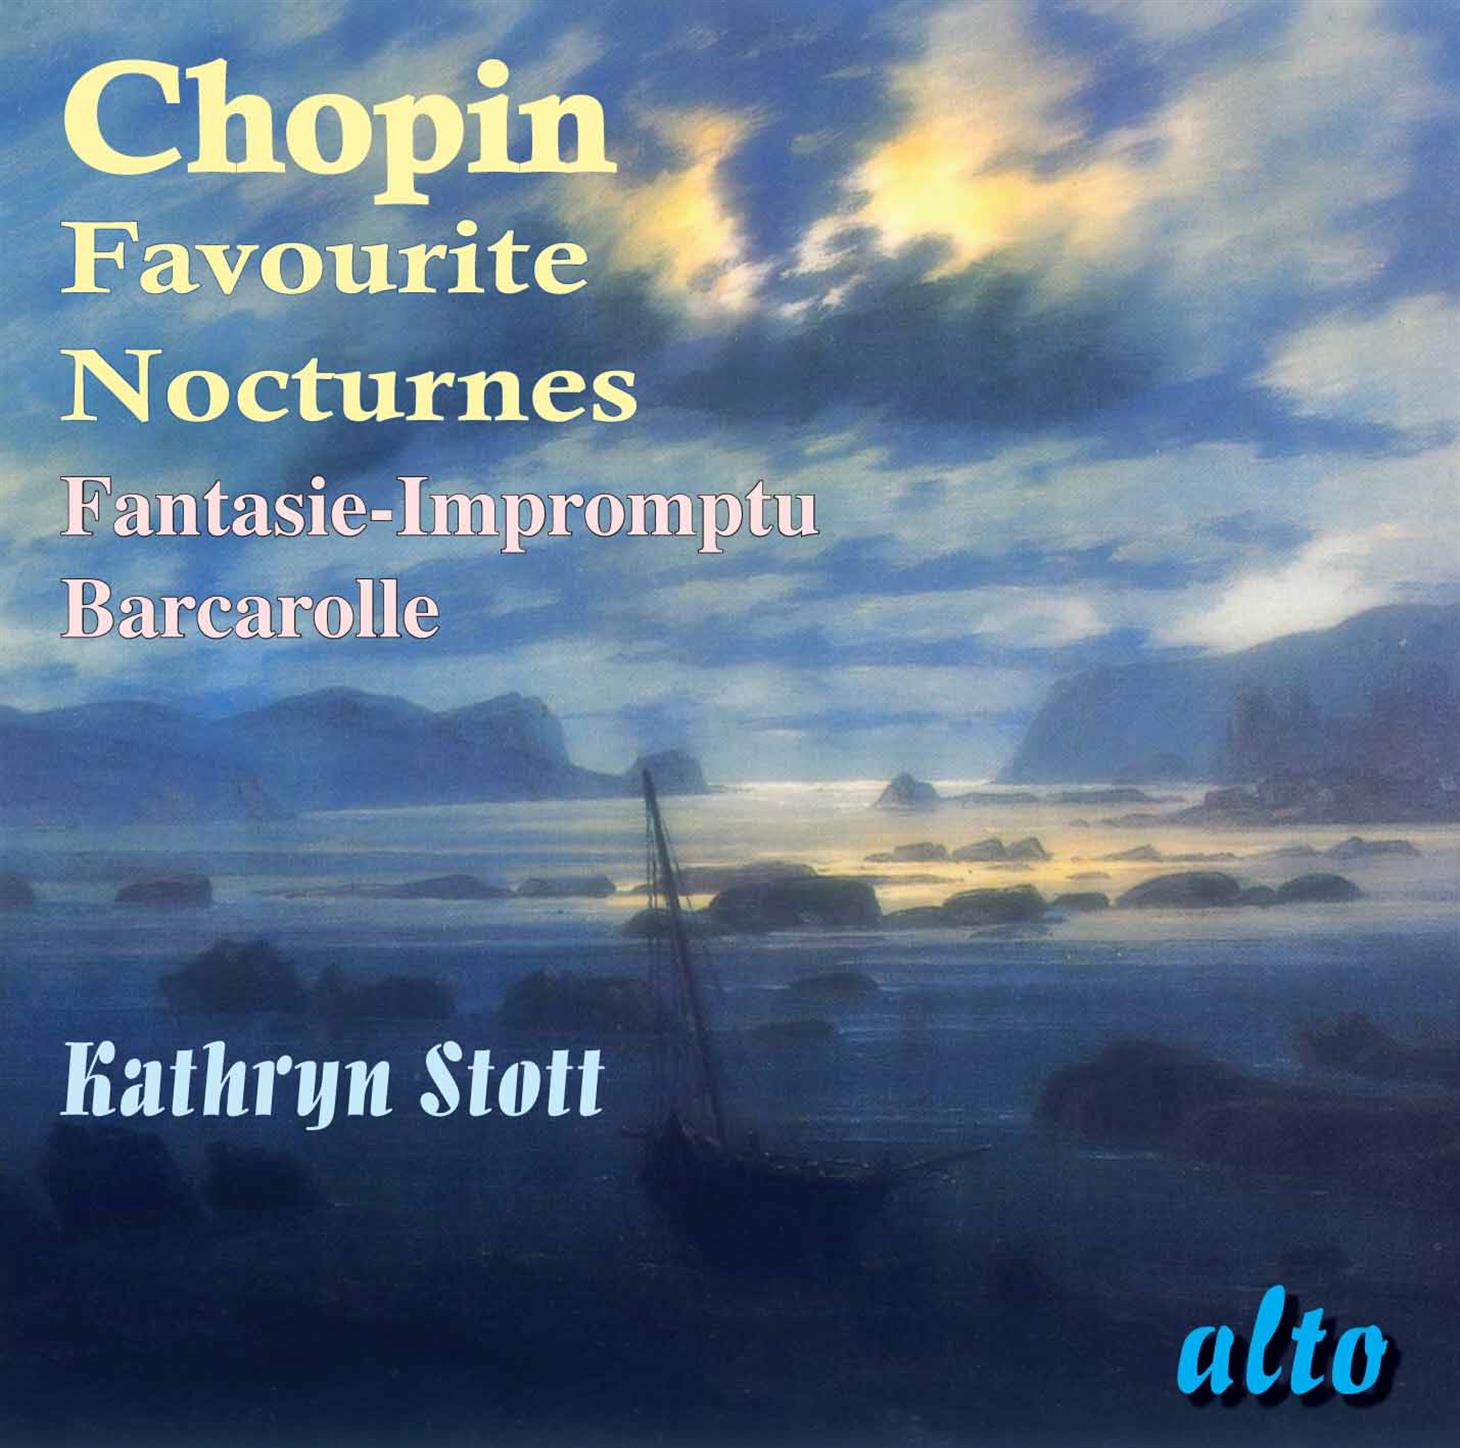 Nocturne in c sharp minor, Op. 27 no. 1: Nocturne in c sharp minor, Op. 27 no. 1